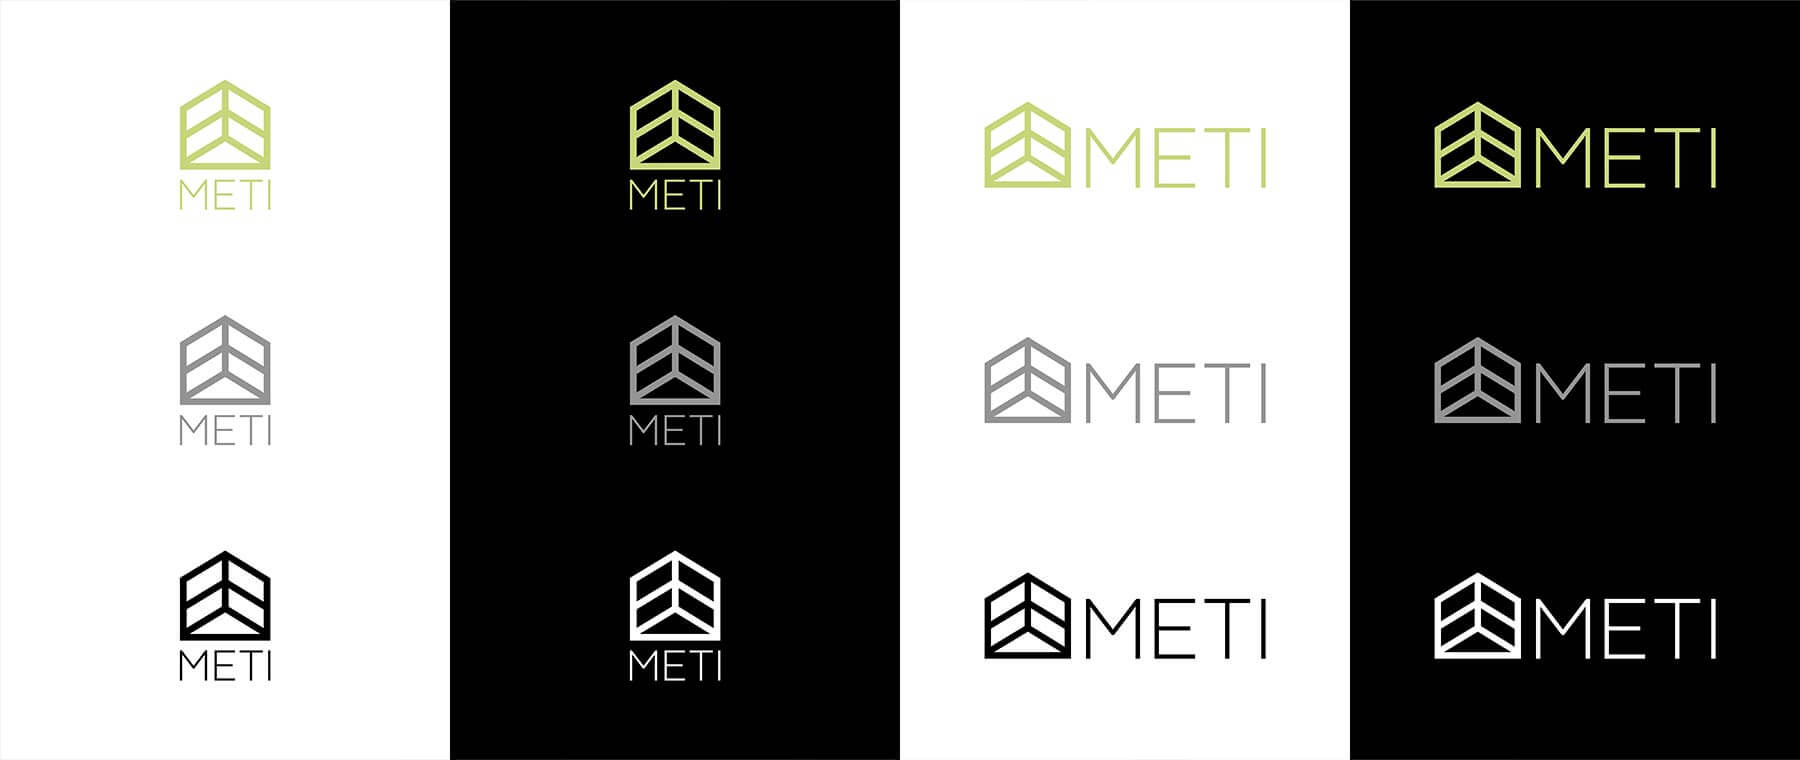 Logo e brand identity di Meti realizzato da SEBA! grafico di Gravellona Toce nel VCO di tutte le versioni di logo su sfondo bianco e nero